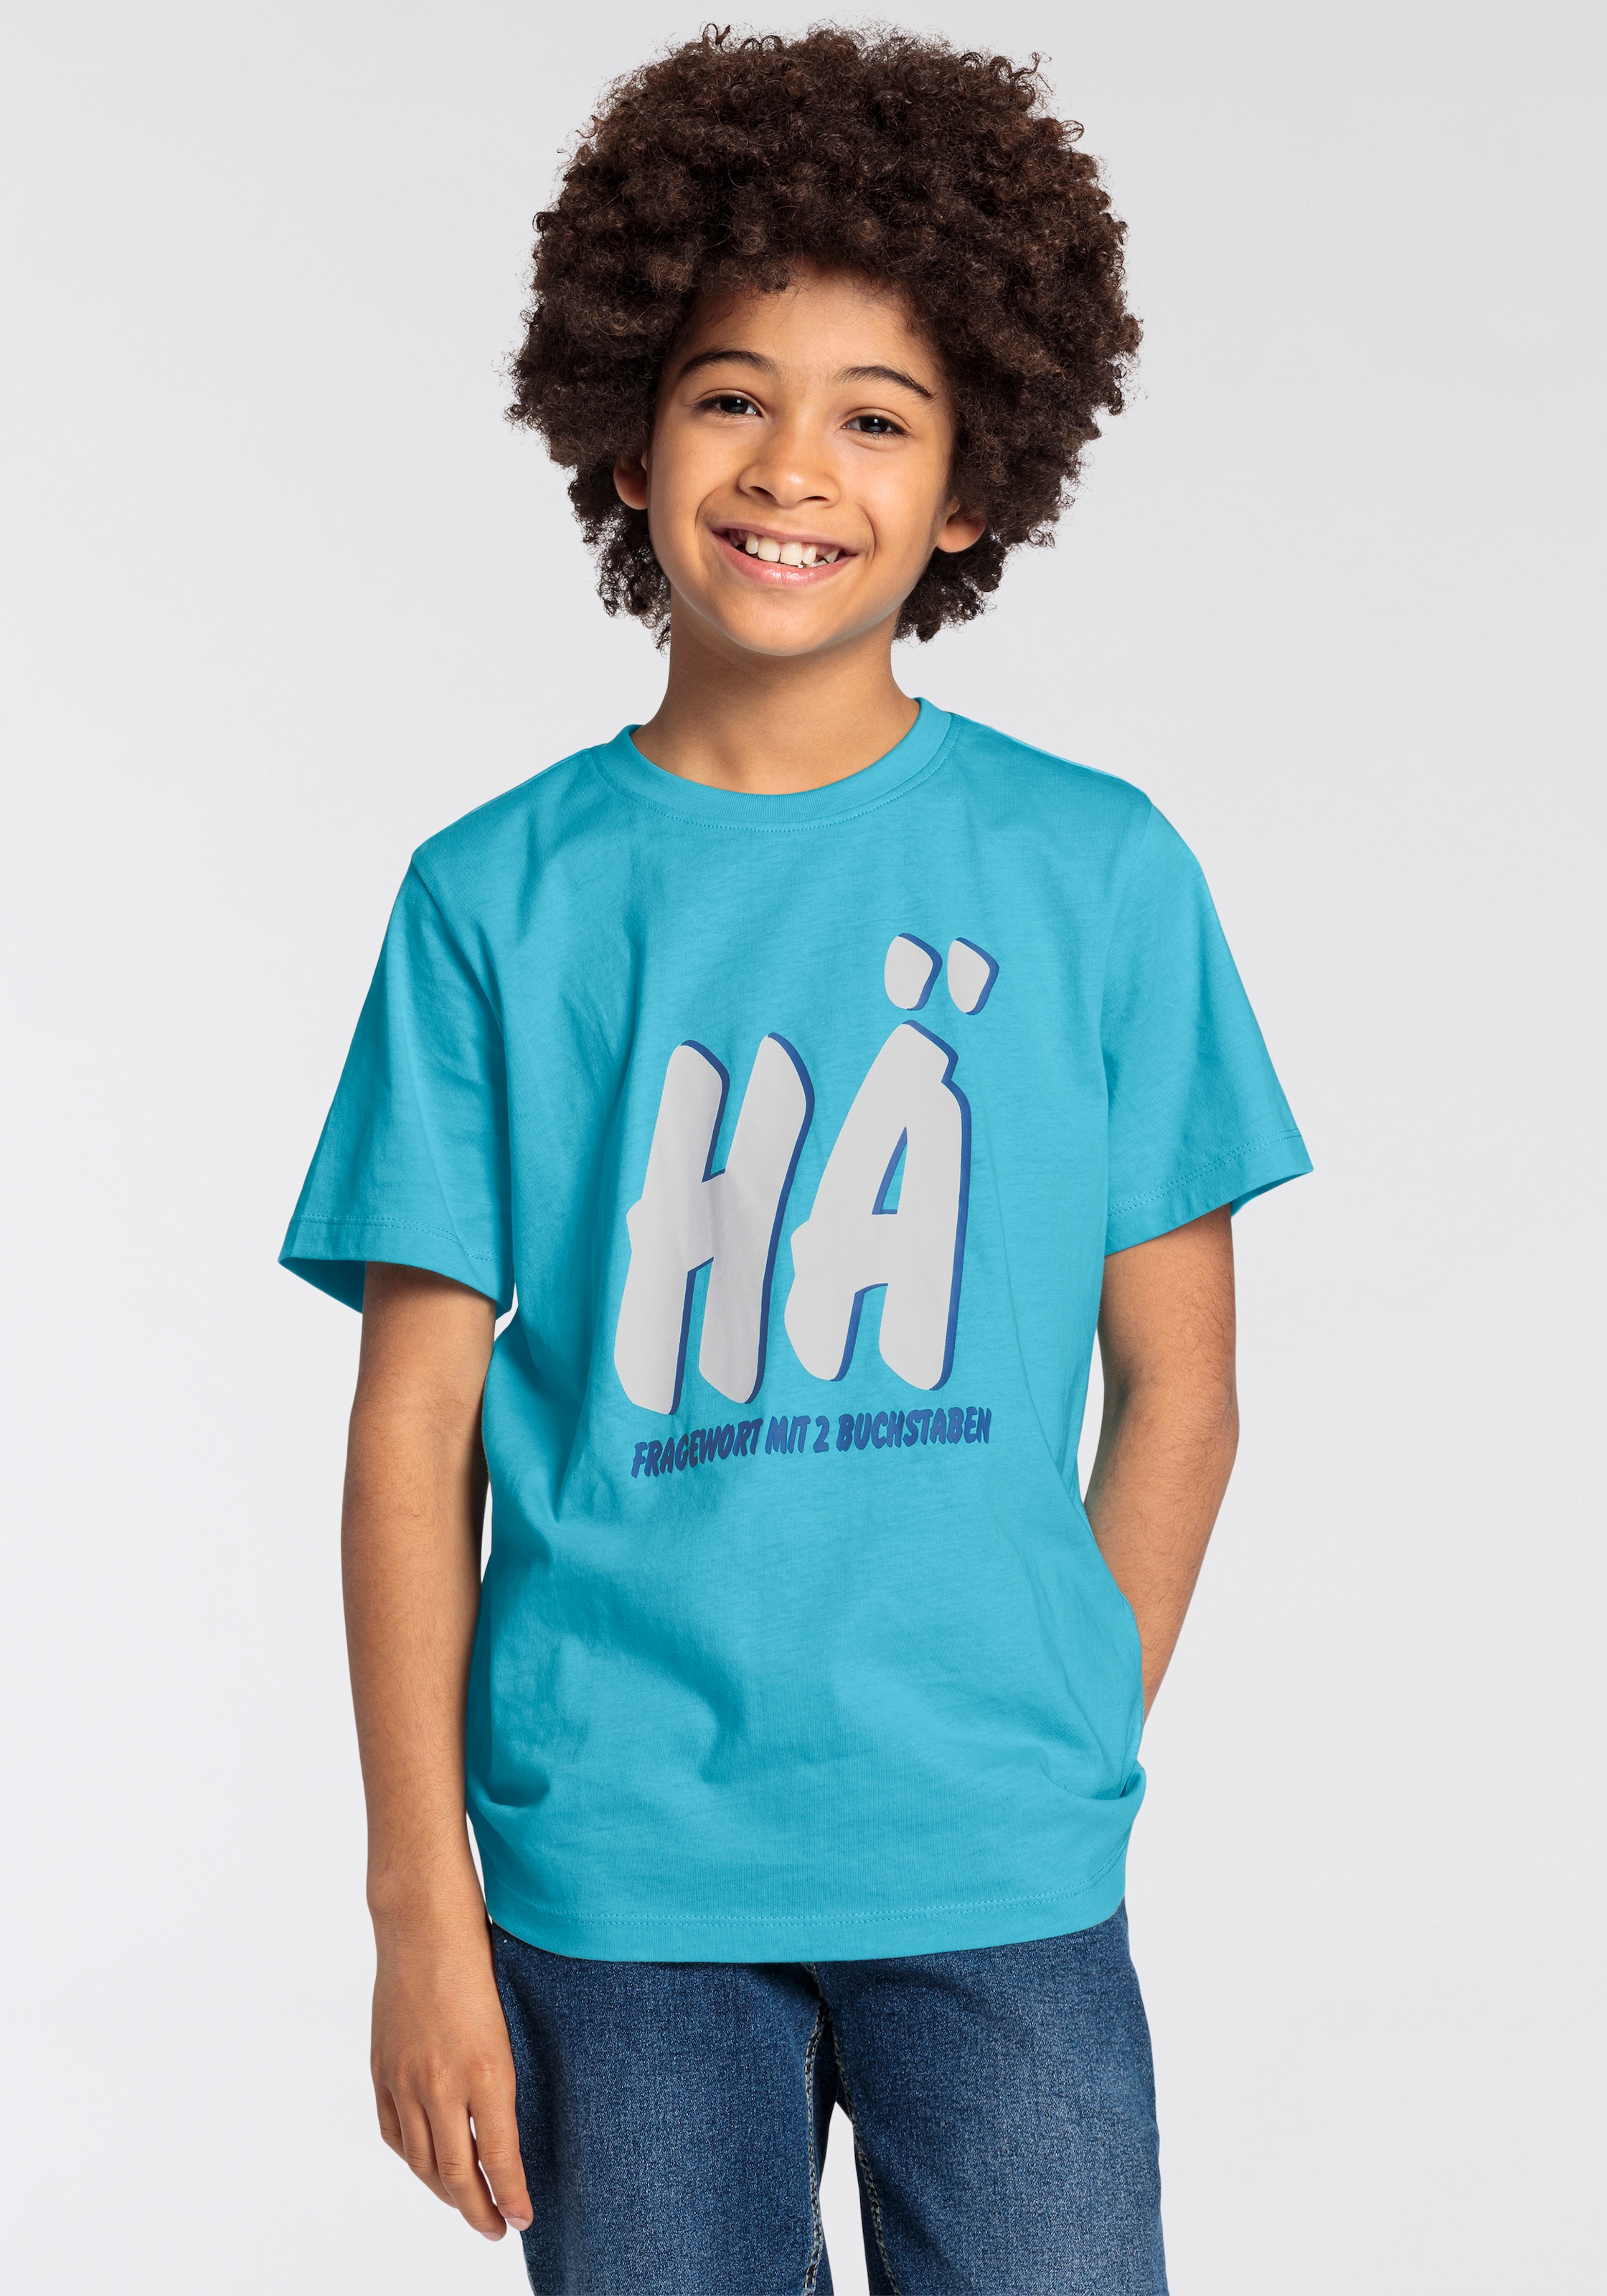 T-Shirt »FRAGEWORT MIT 2 BUCHSTABEN«, Sprücheshirt für Jungen